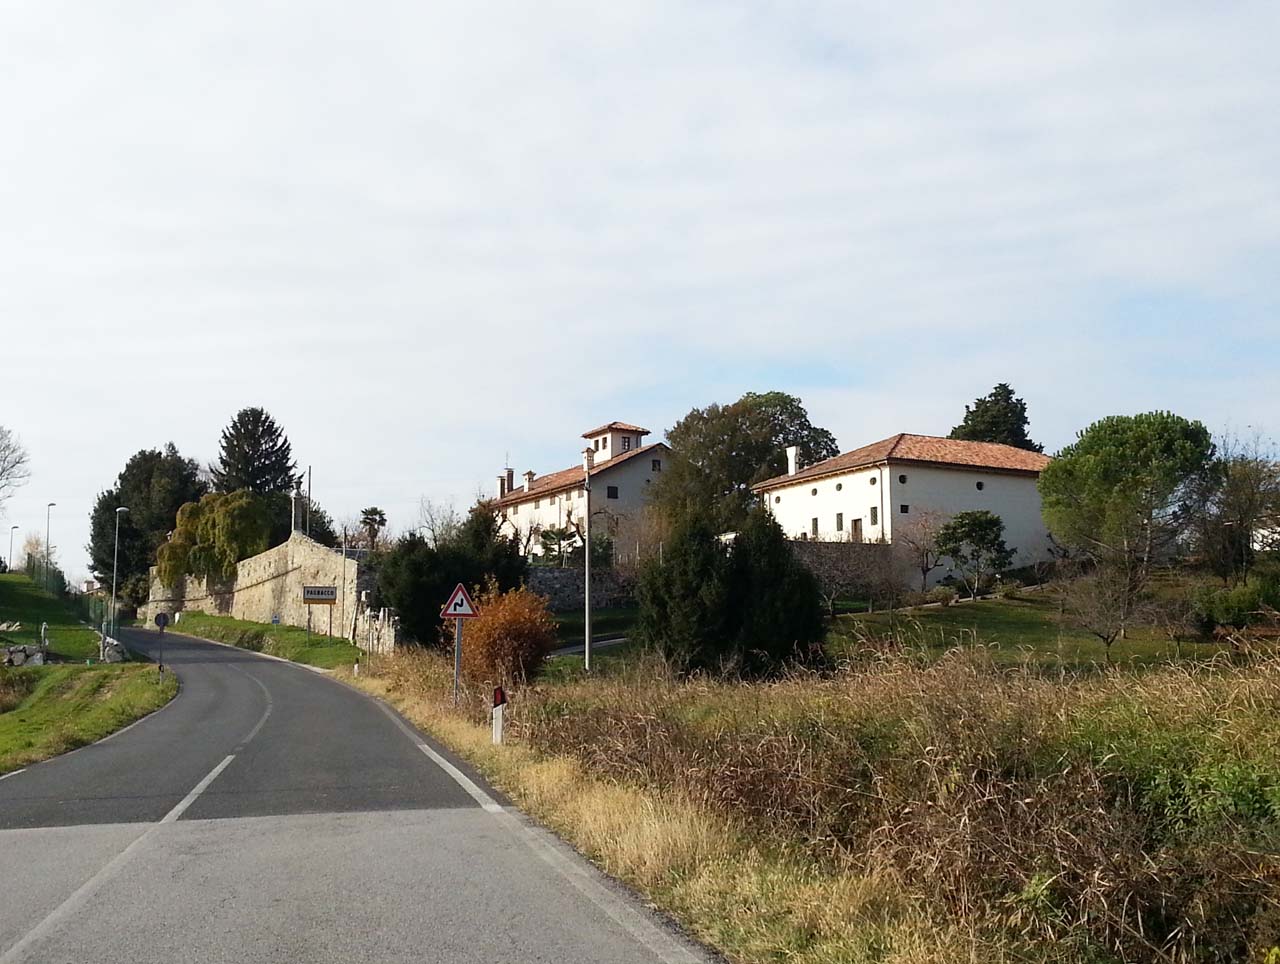 Villa Savorgnan Cergneu di Brazzà (villa, privata) - Pagnacco (UD) 